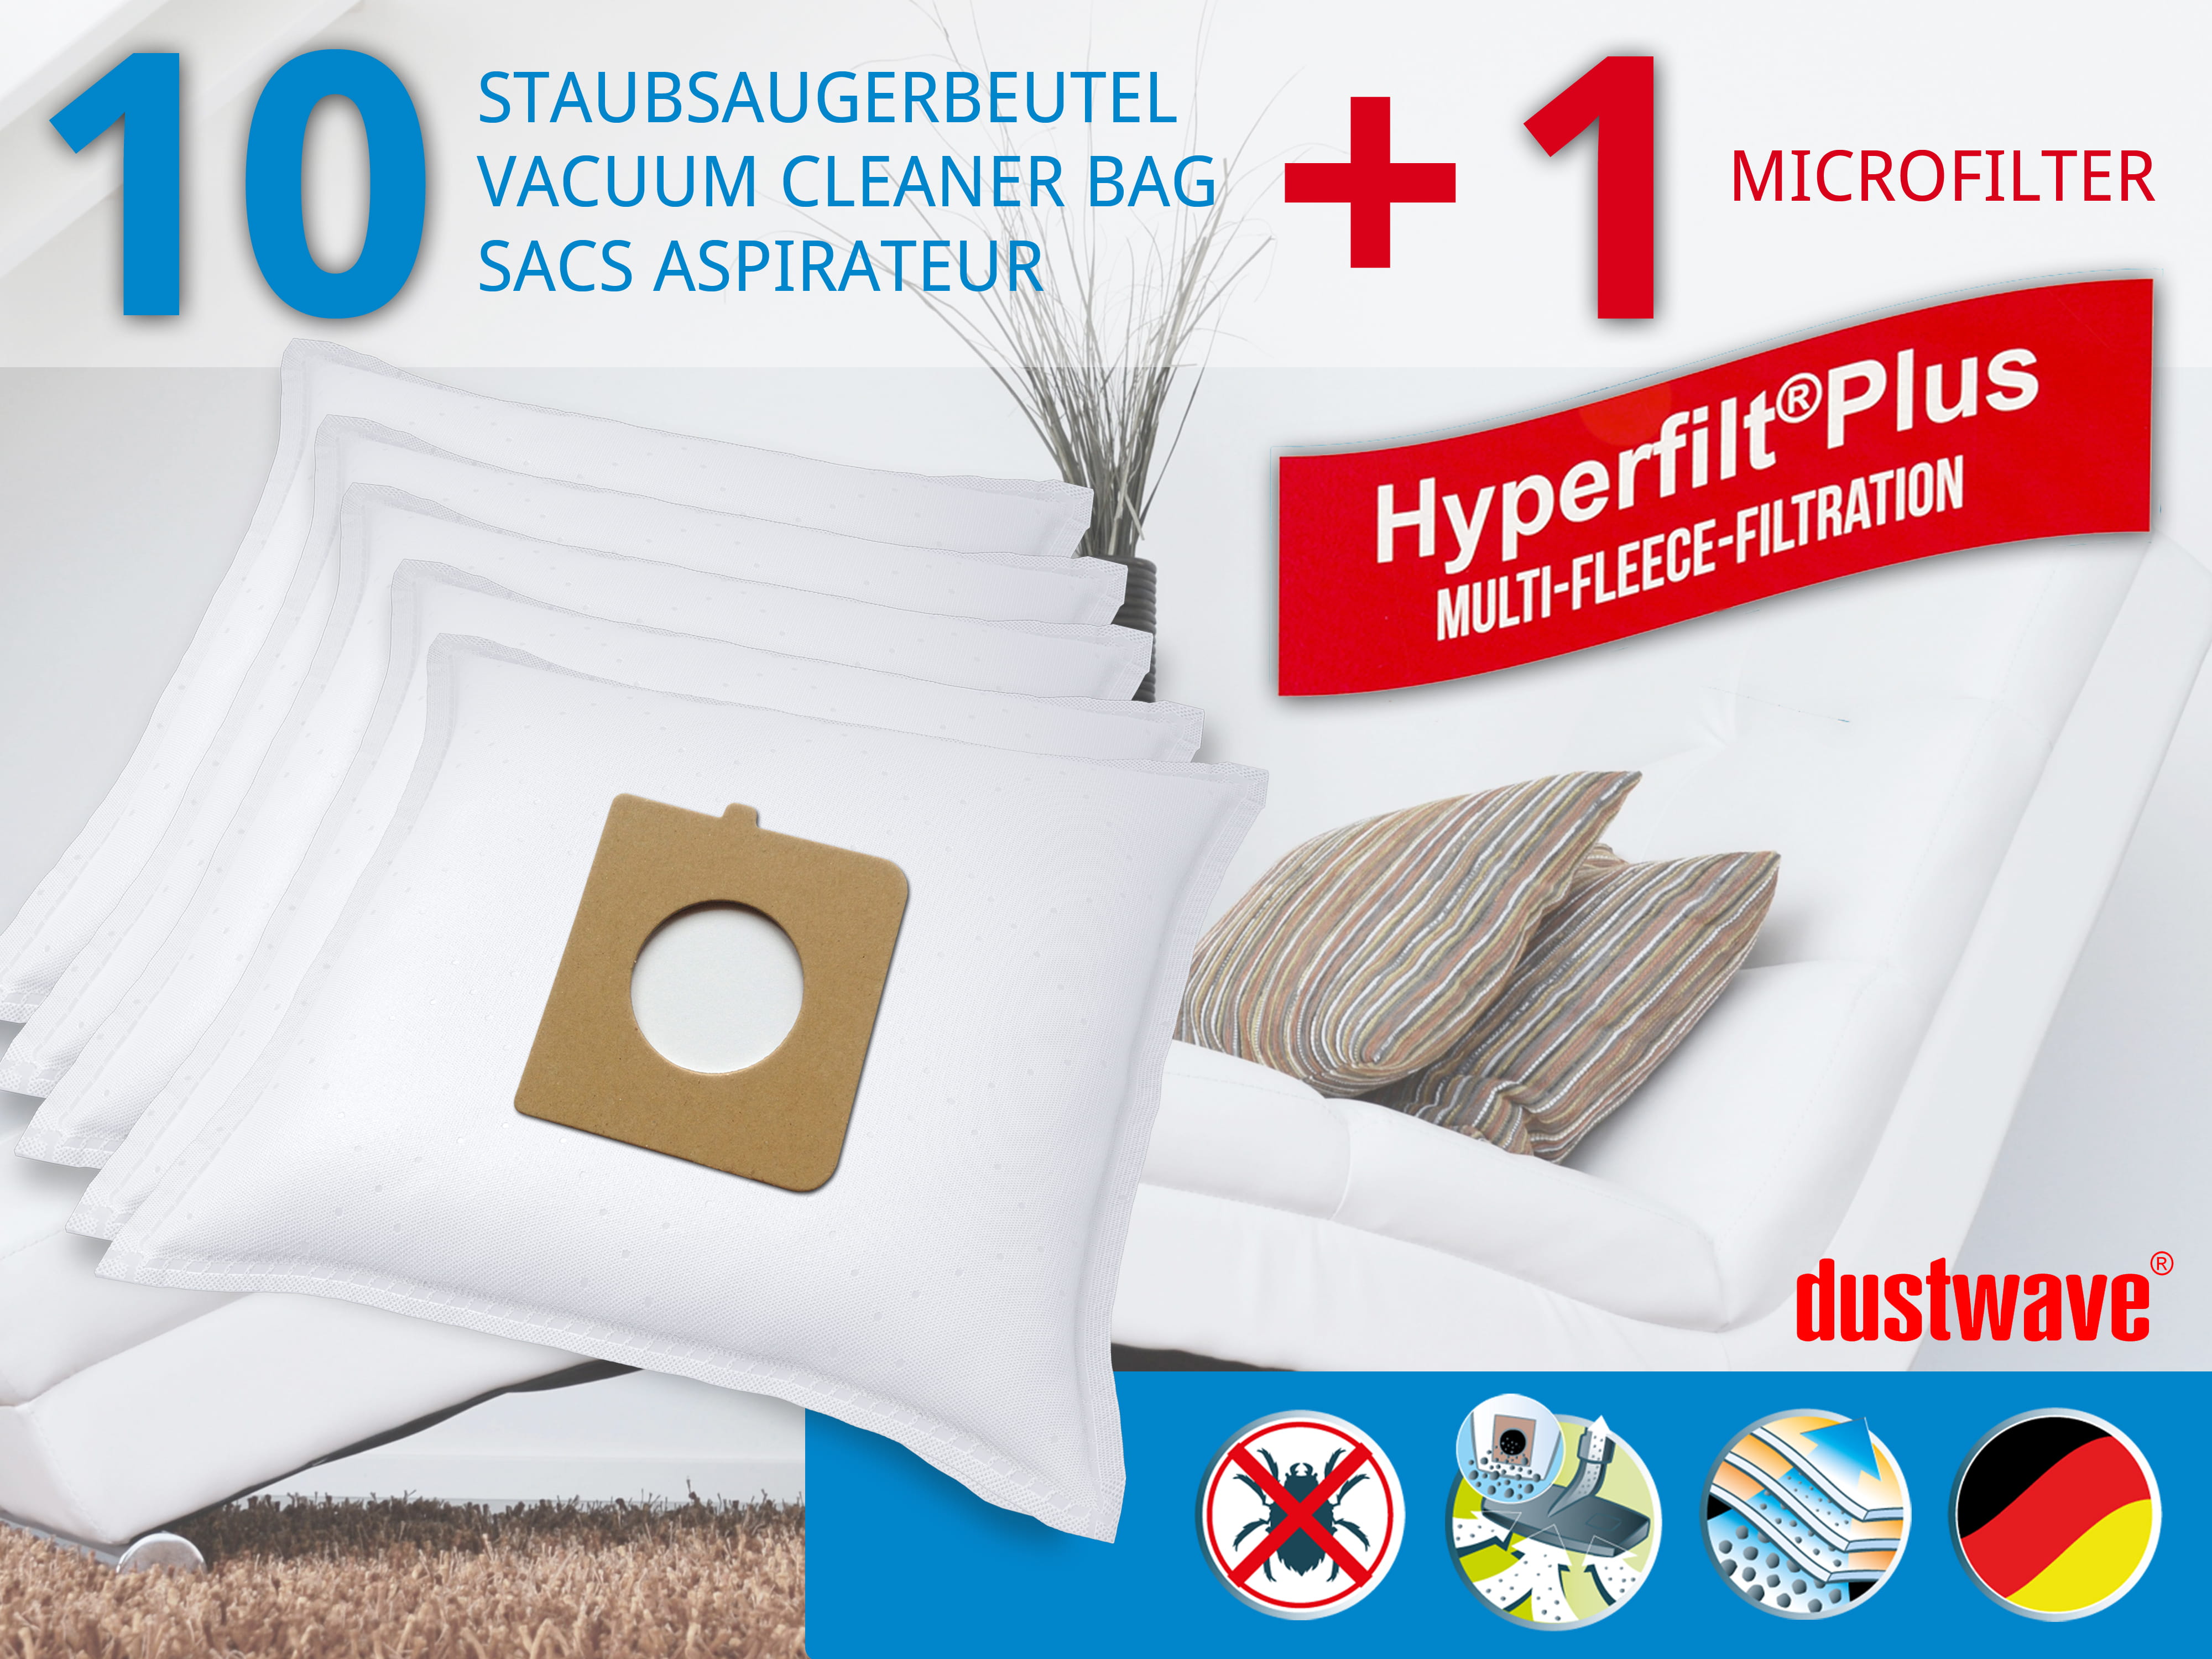 Dustwave® 10 Staubsaugerbeutel für Hoover TX1600 020 Telios Extra - hocheffizient, mehrlagiges Mikrovlies mit Hygieneverschluss - Made in Germany